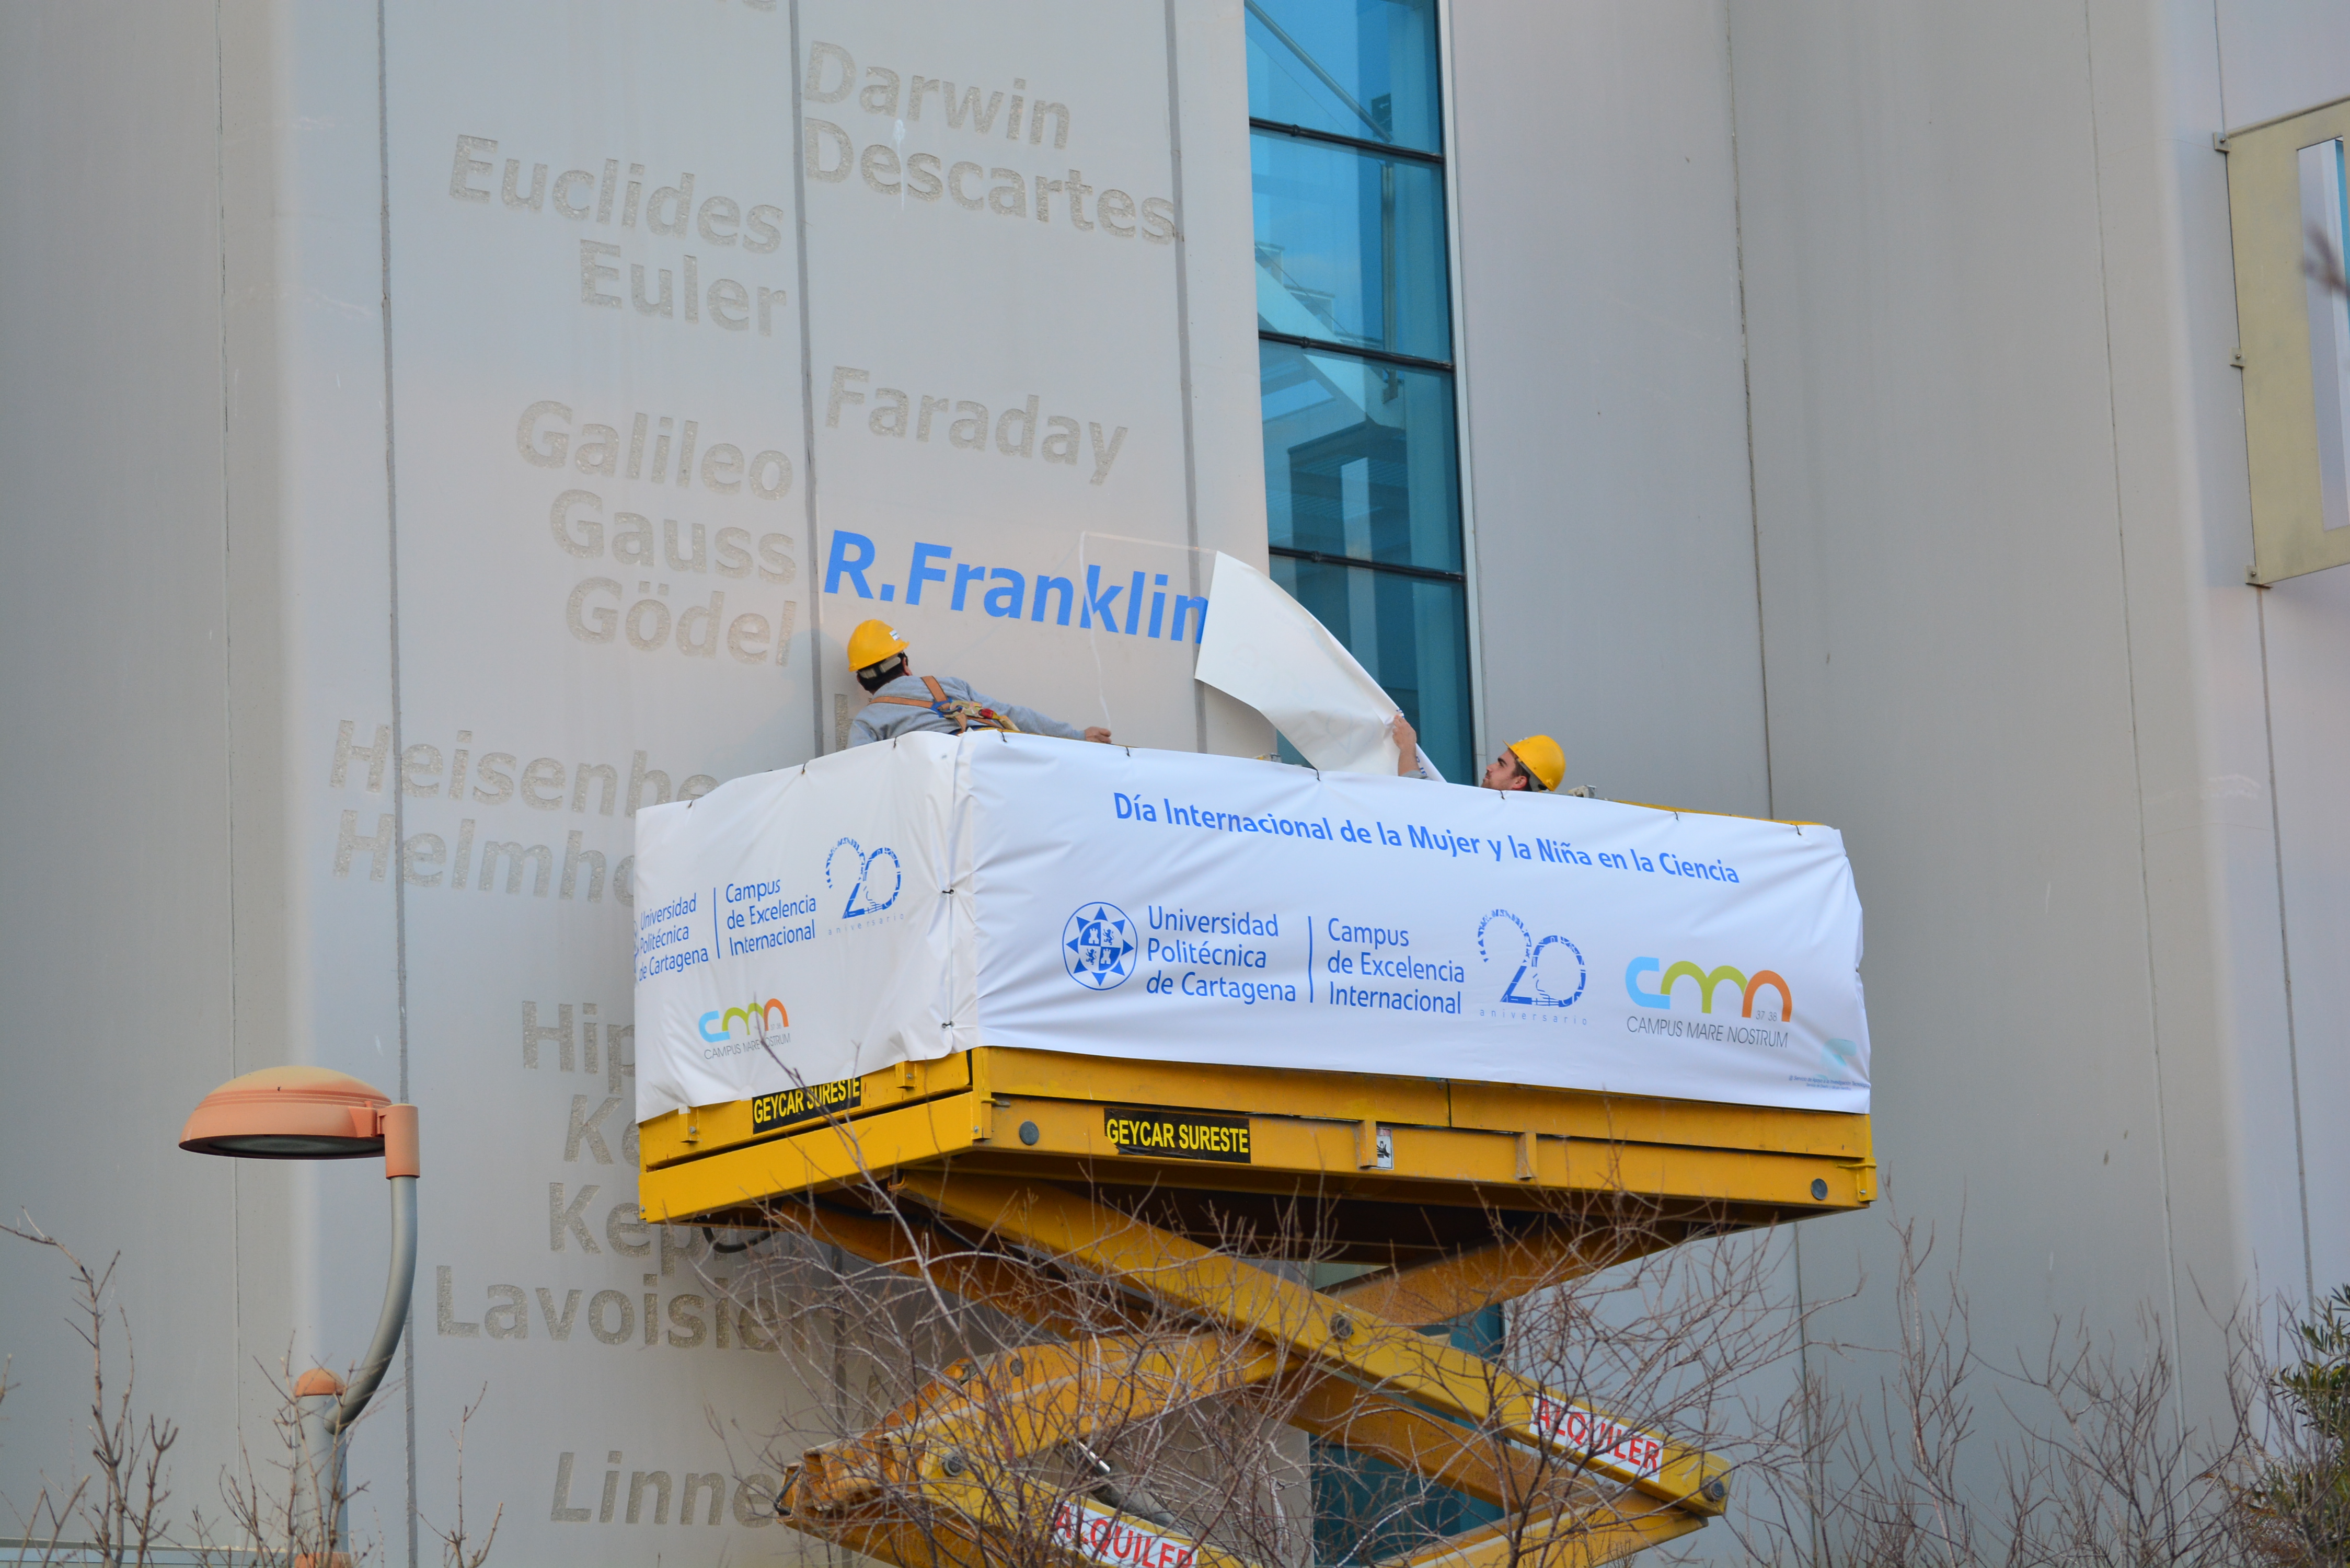 foto: Nueva inscripción en la fachada del edificio I+D+I, Rosalind Franklin es la seleccionada este año